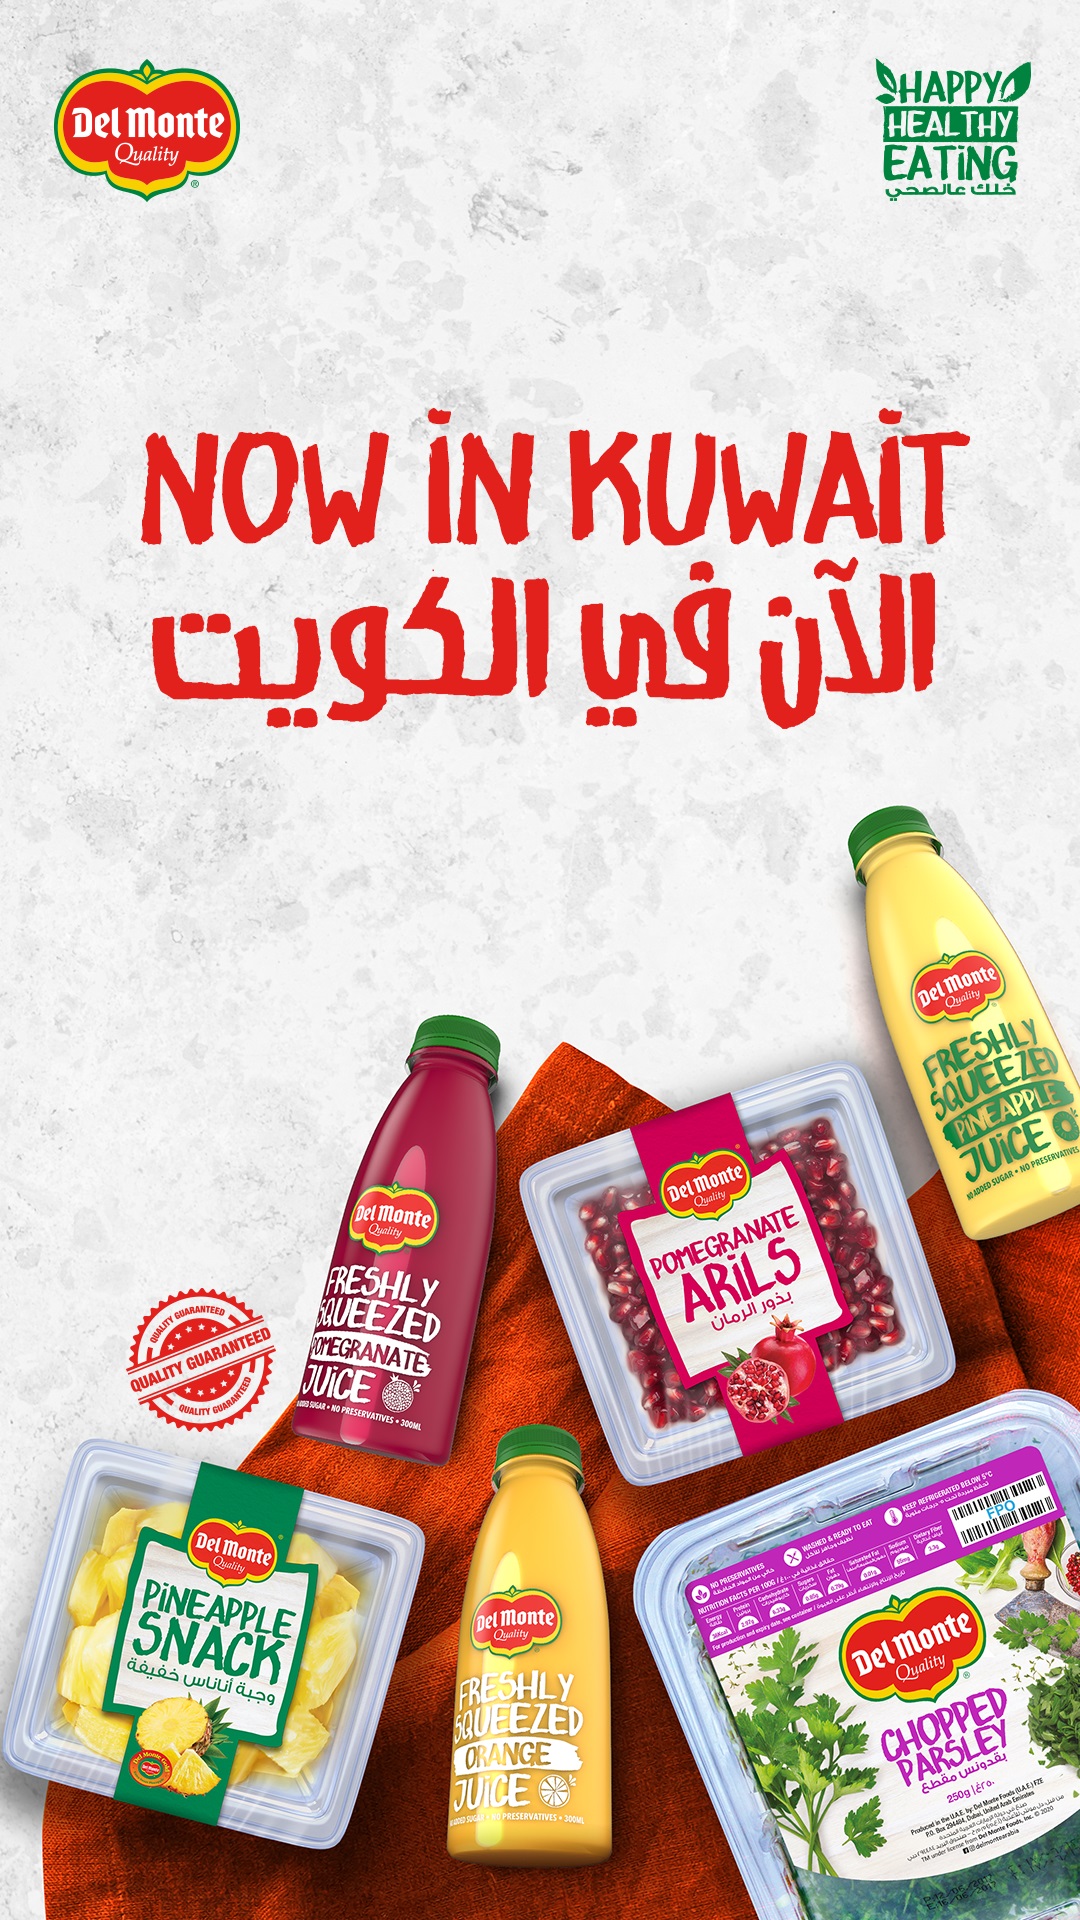 《دل مونتي》 للمنتجات الطازجة في الكويت تعلن اضافة مجموعة جديدة من المنتجات الصحية و المغذية الى قائمتها